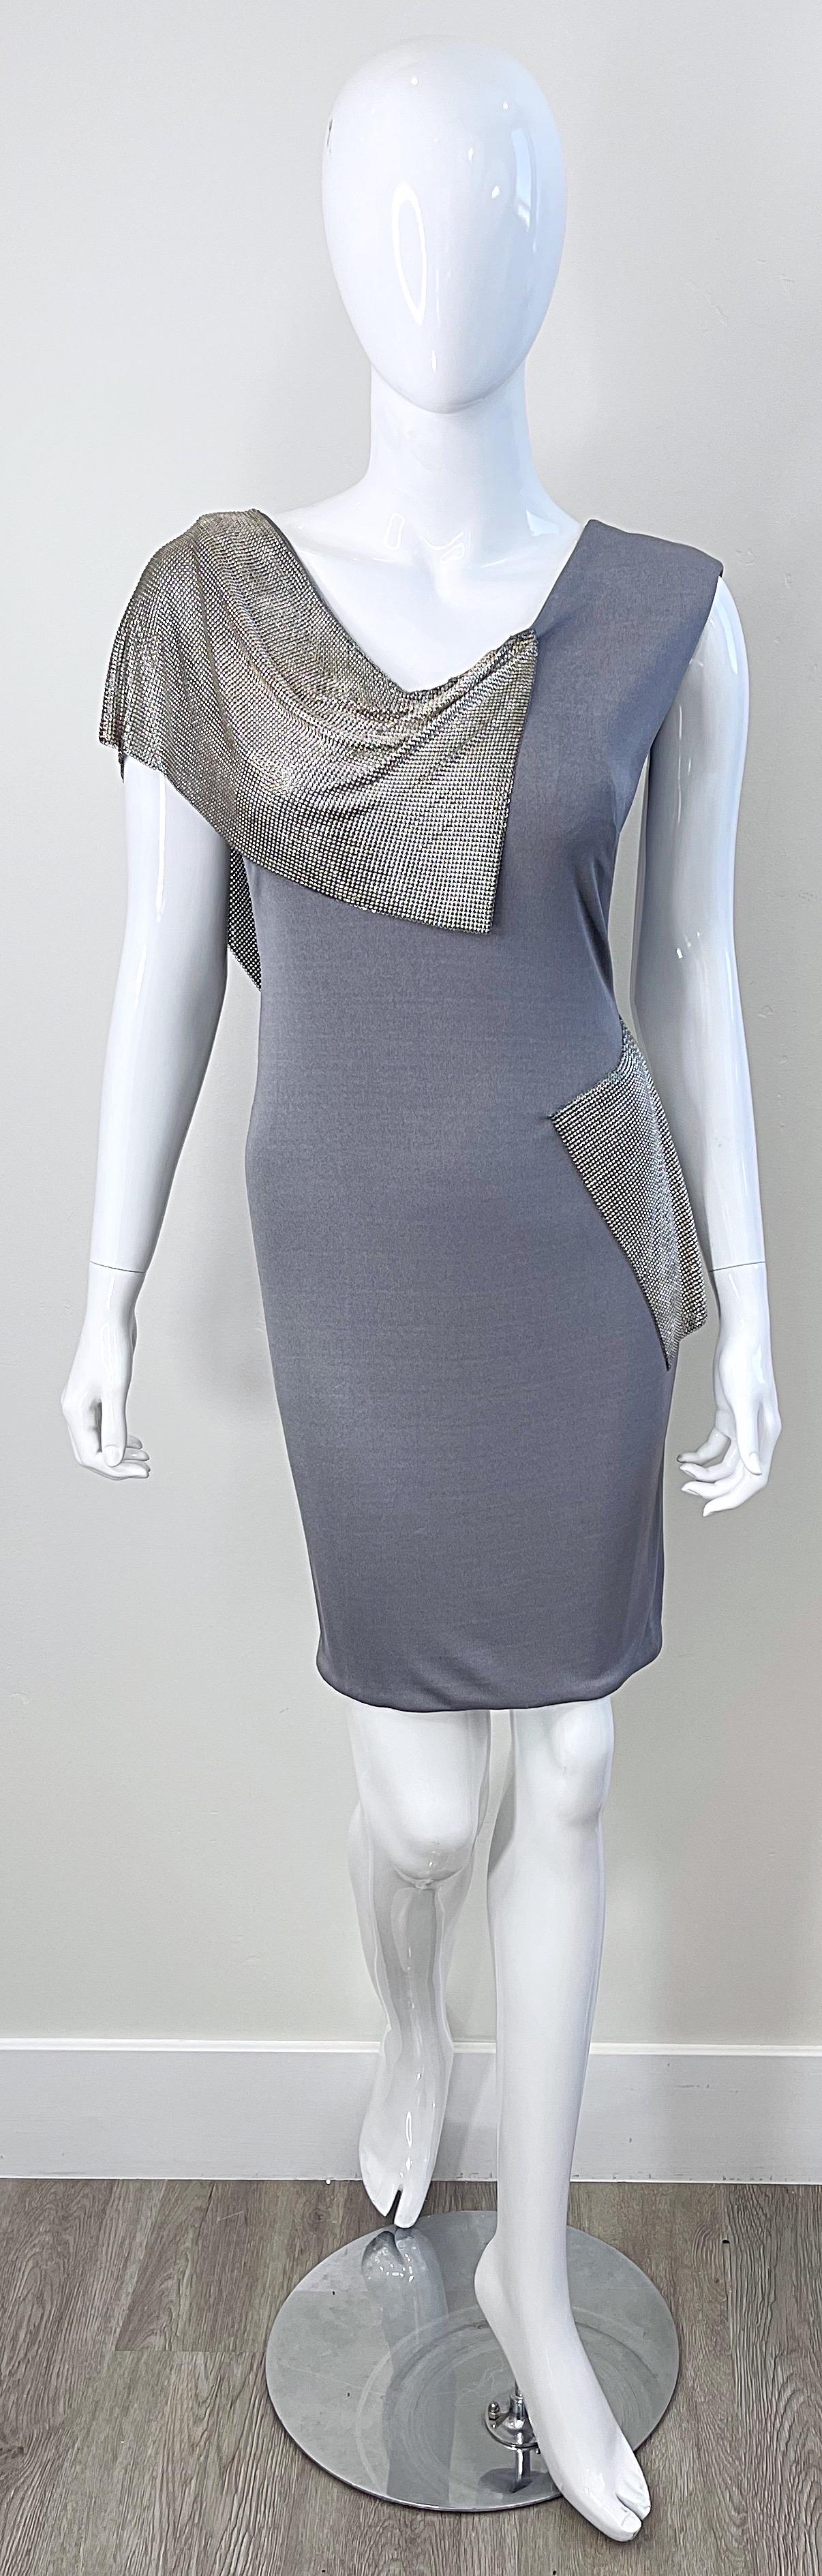 Superbe robe CD GREENE du début des années 2000 en jersey de soie gris et maille cotte de mailles argentée ! Greene a en fait étudié l'architecture, mais il s'est intéressé à la mode. Ses robes sont de véritables œuvres d'art et sa formation en